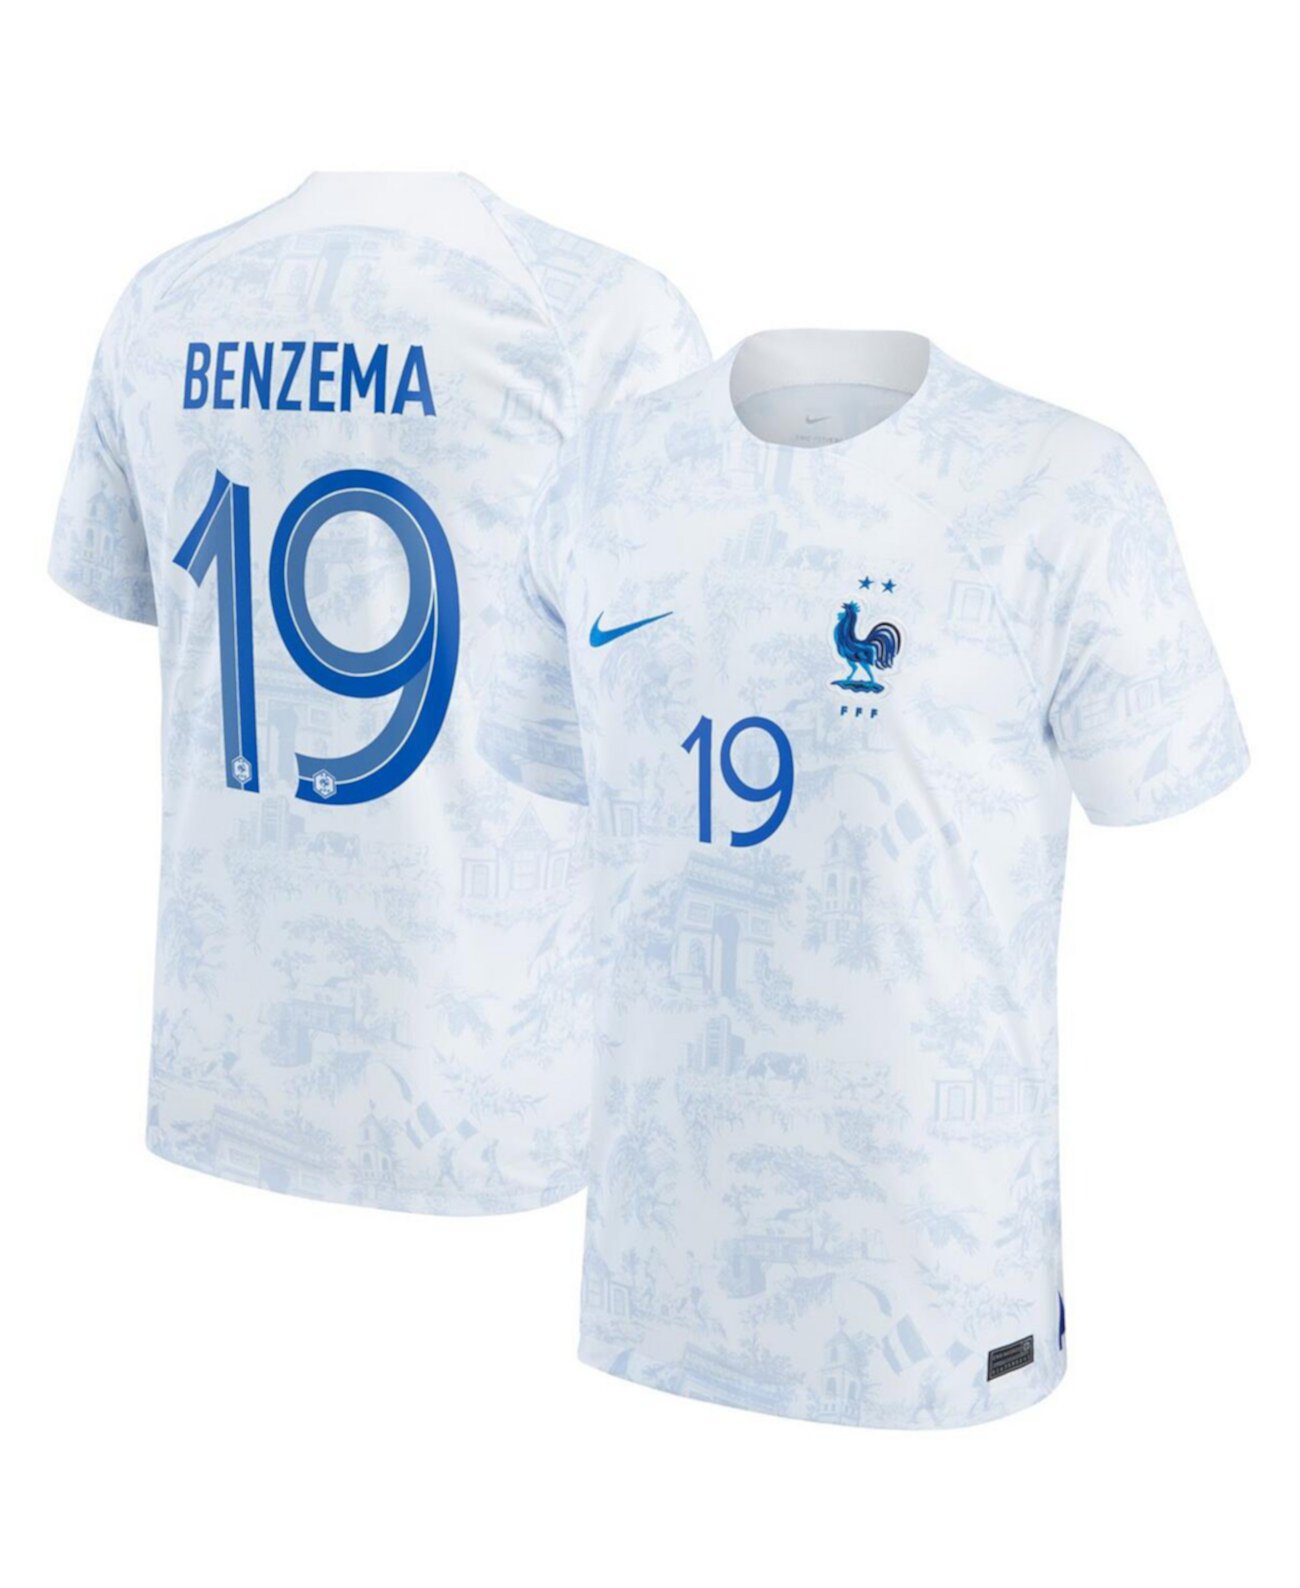 Молодежь для мальчиков Карим Бензема, белая сборная Франции 2022/23, выездная копия стадиона Breathe Stadium, футболка игрока Nike